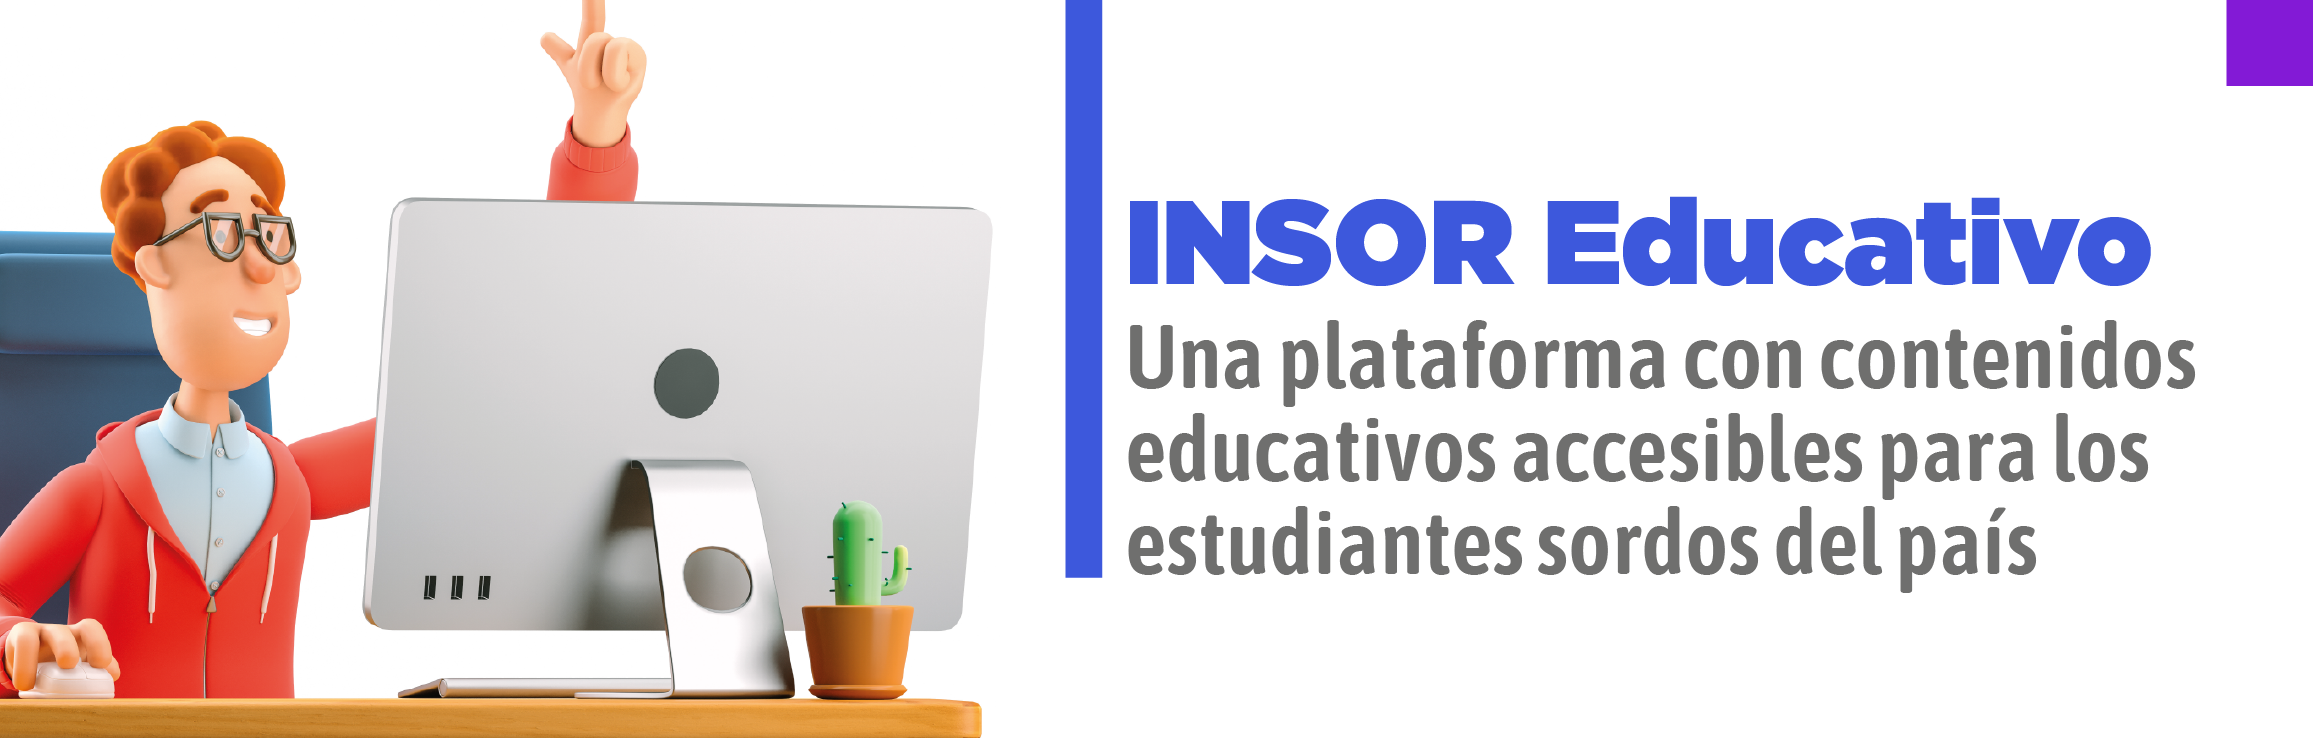 INSOR Educativo, una plataforma con contenidos educativos accesibles para los estudiantes sordos del país